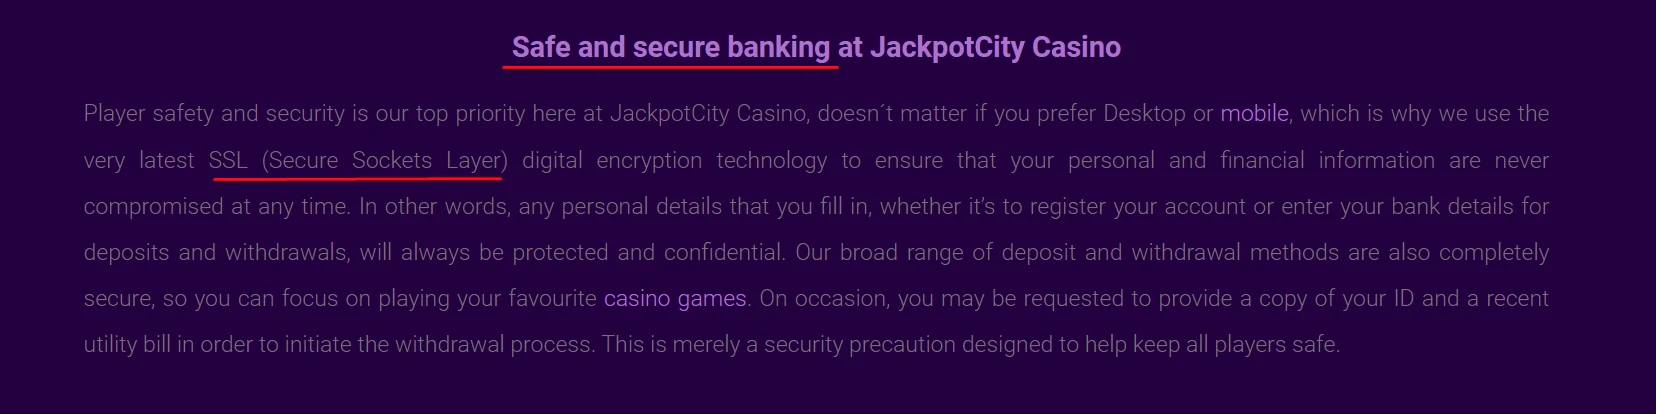 Jackpot City Security